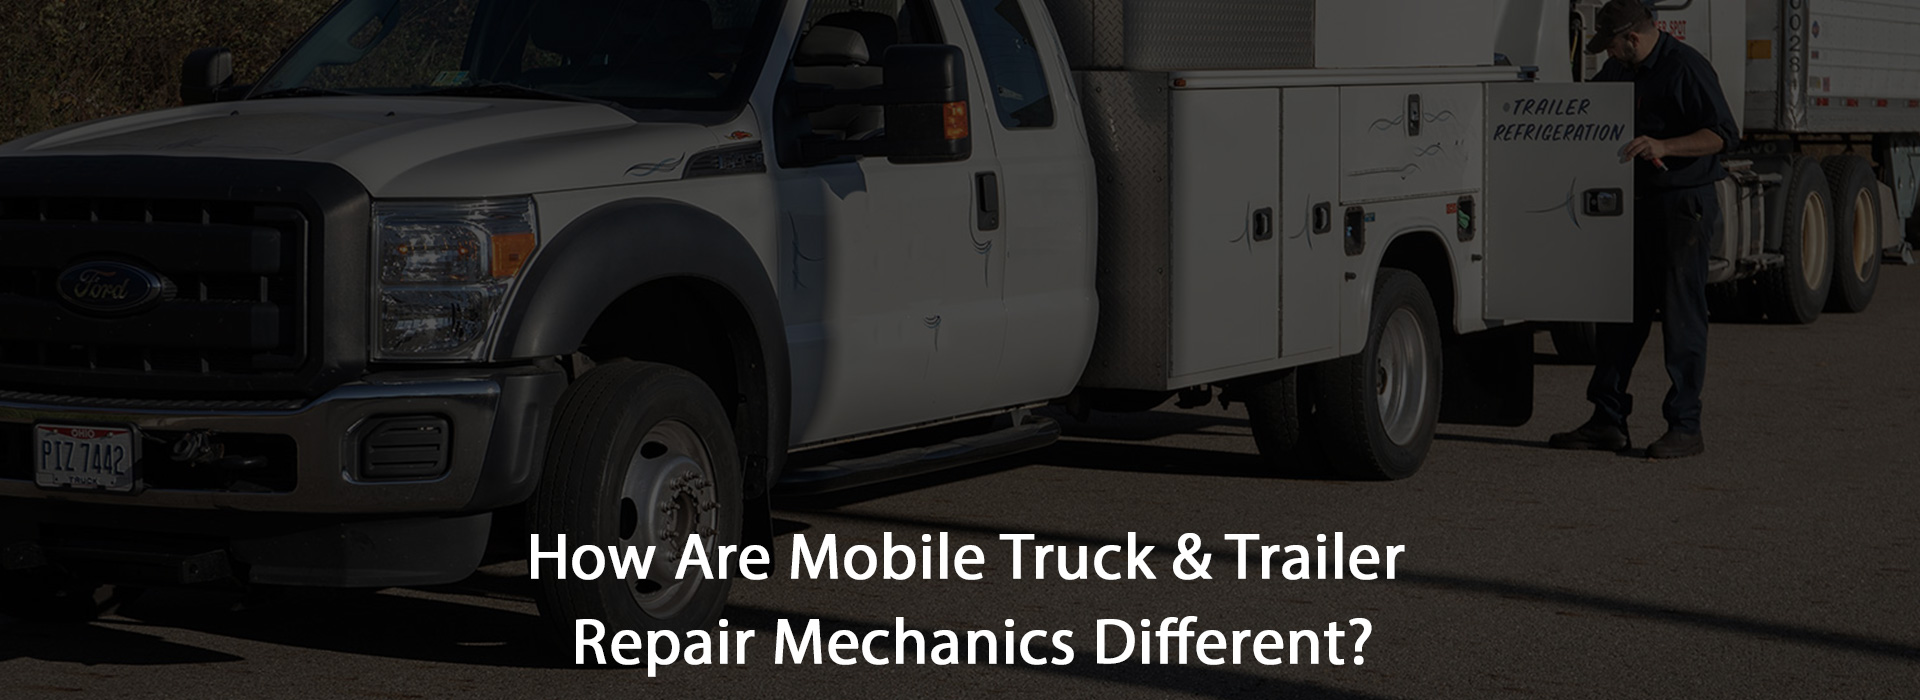 Mobile Truck and Trailer Repair